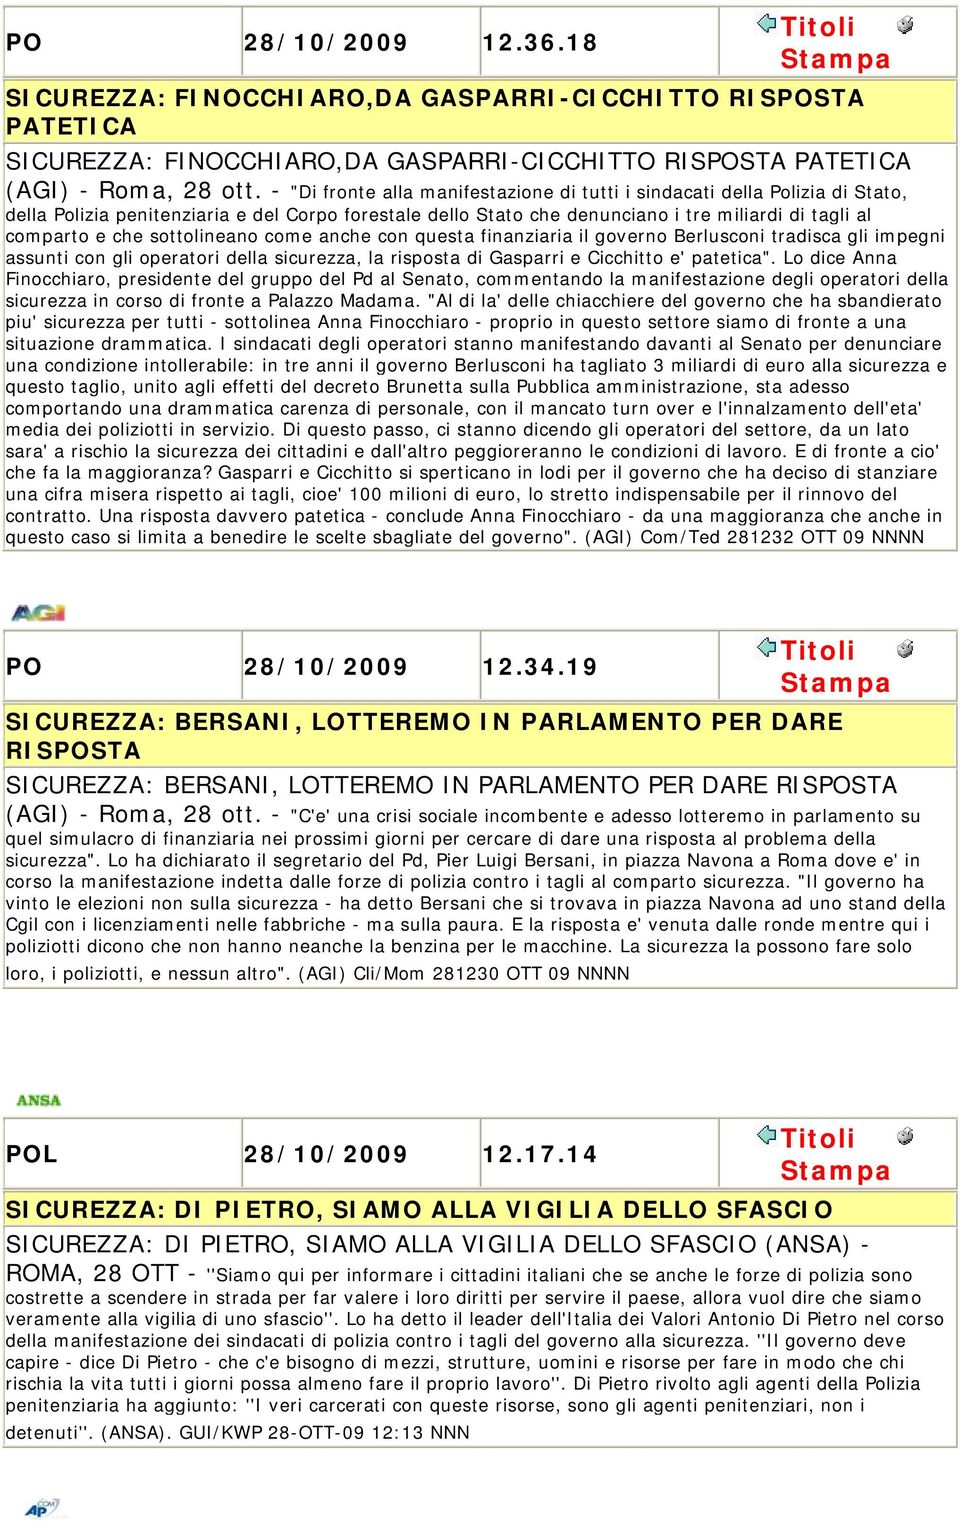 sottolineano come anche con questa finanziaria il governo Berlusconi tradisca gli impegni assunti con gli operatori della sicurezza, la risposta di Gasparri e Cicchitto e' patetica".